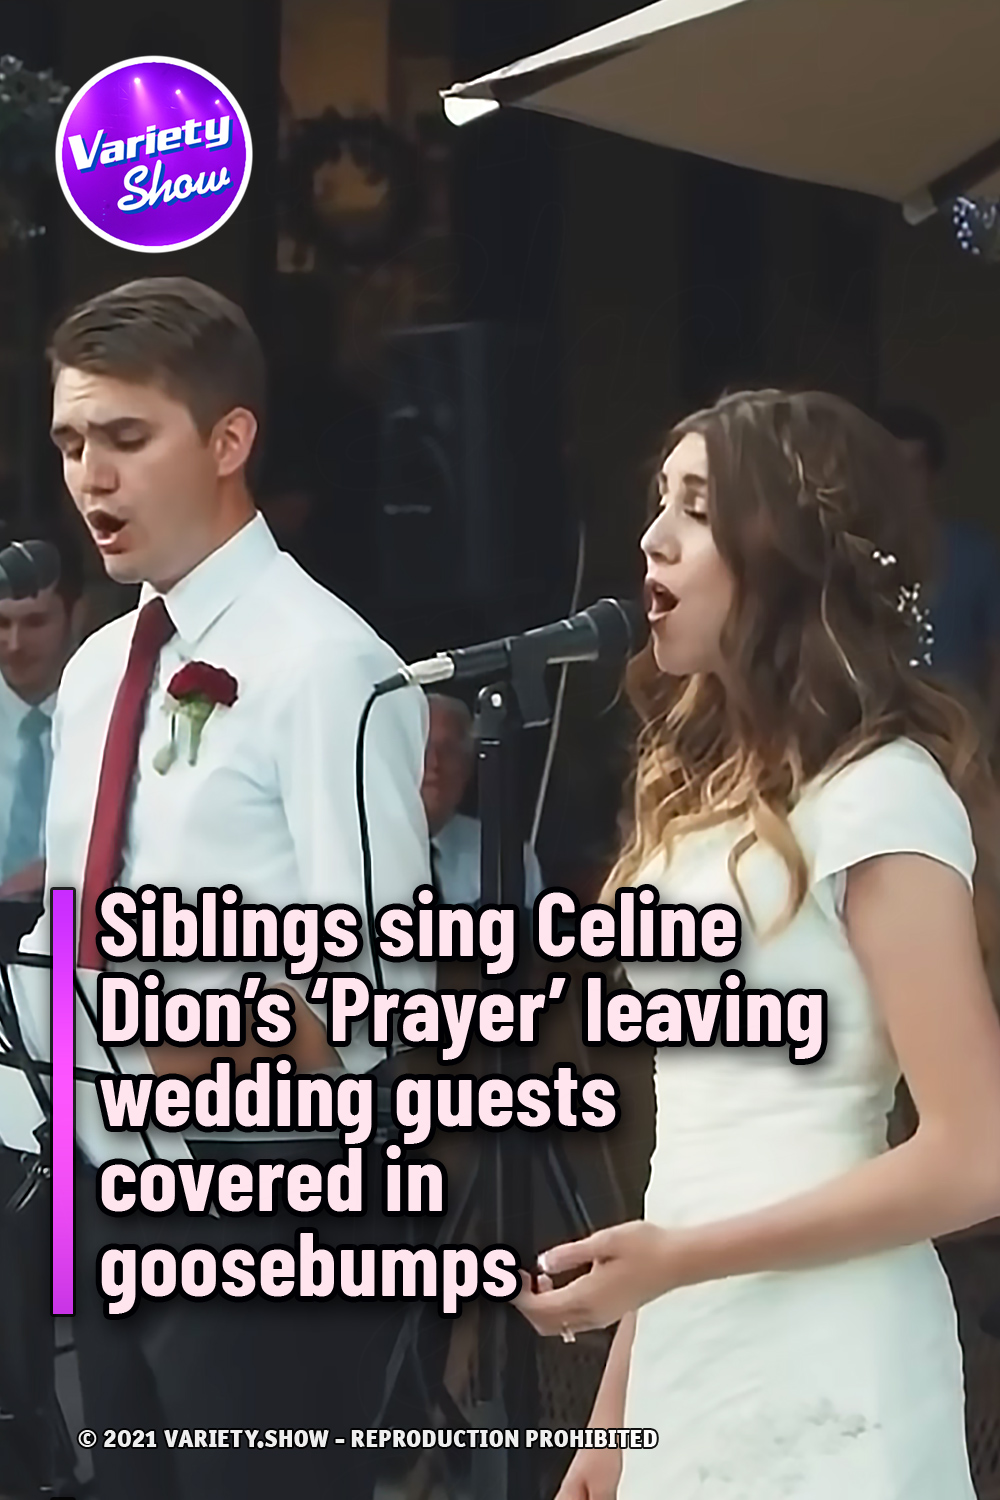 Siblings sing Celine Dion’s ‘Prayer’ leaving wedding guests covered in goosebumps